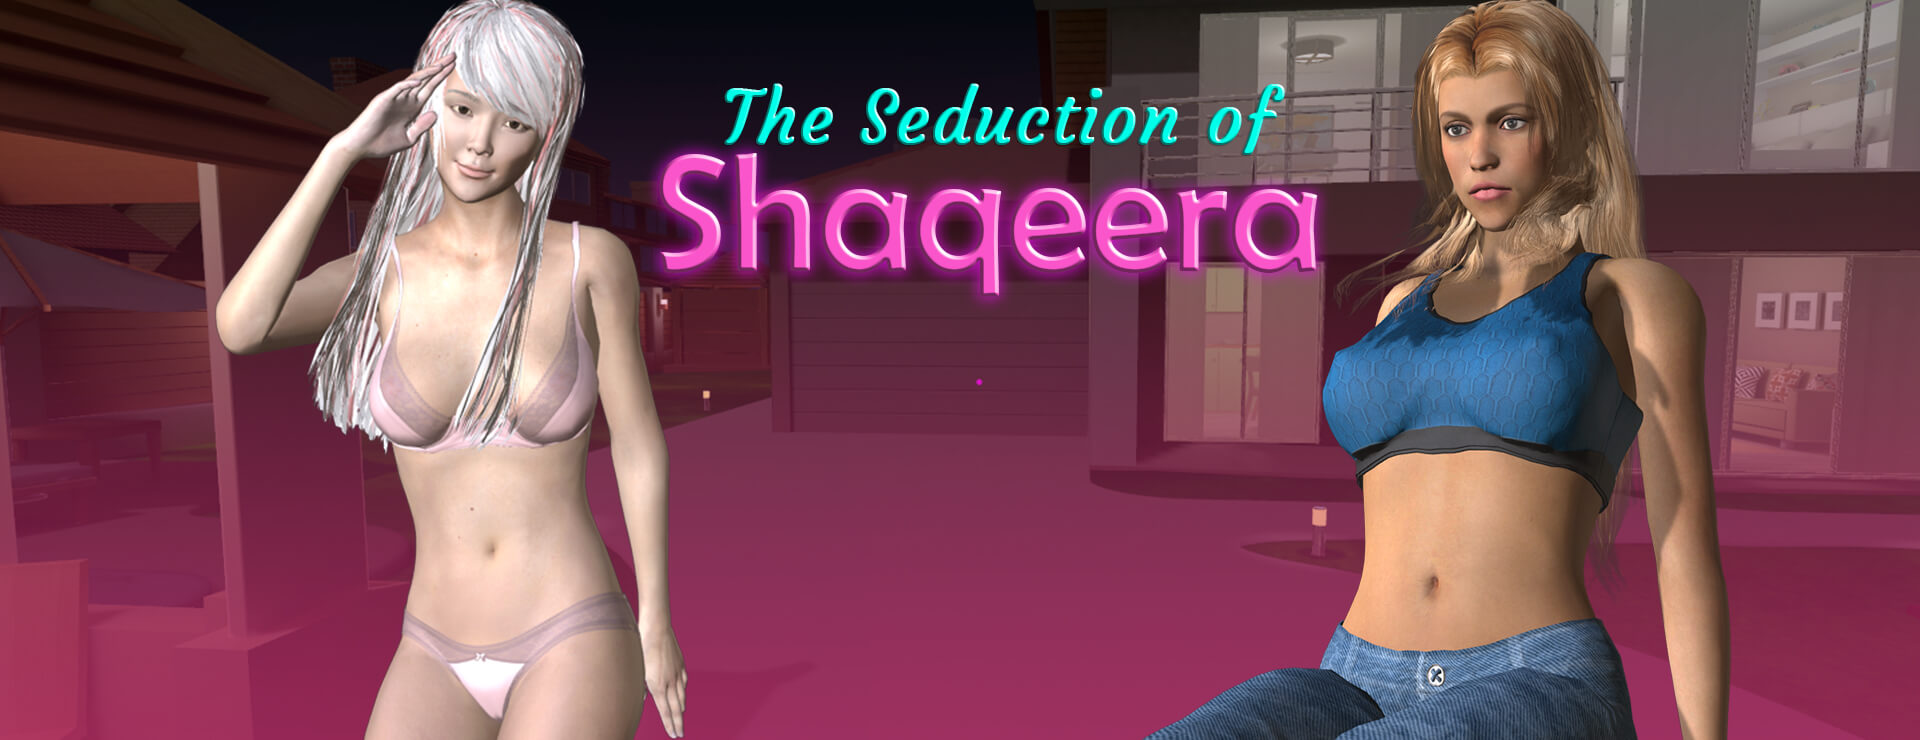 The Seduction Of Shaqeera - アクションアドベンチャー ゲーム